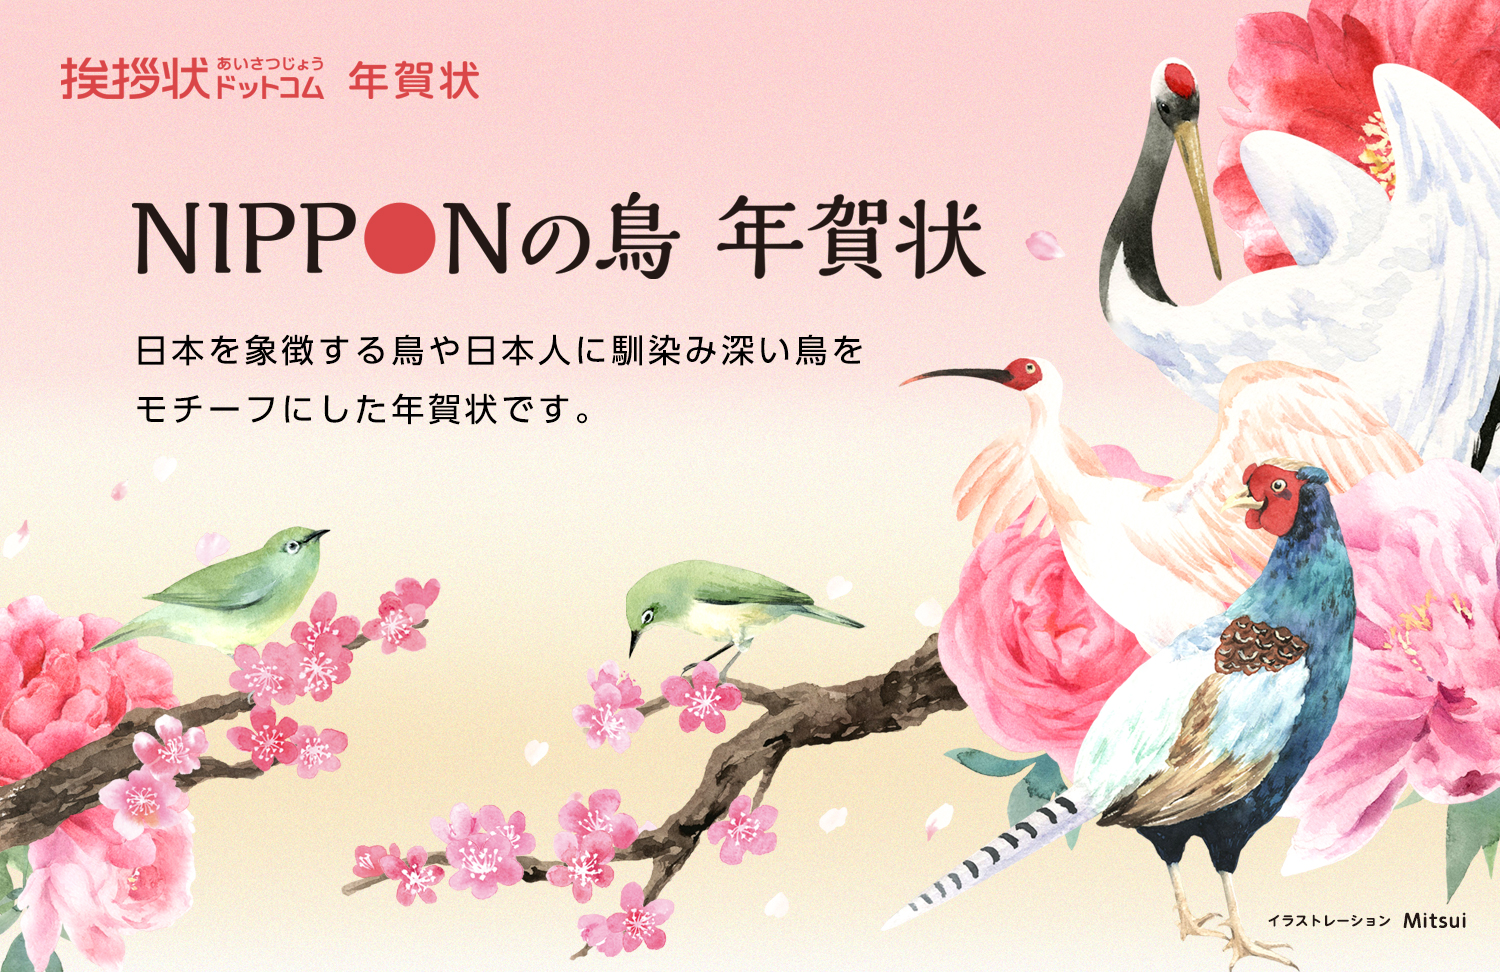 挨拶状ドットコム Nipponの鳥 年賀状 株式会社グリーティングワークスのプレスリリース